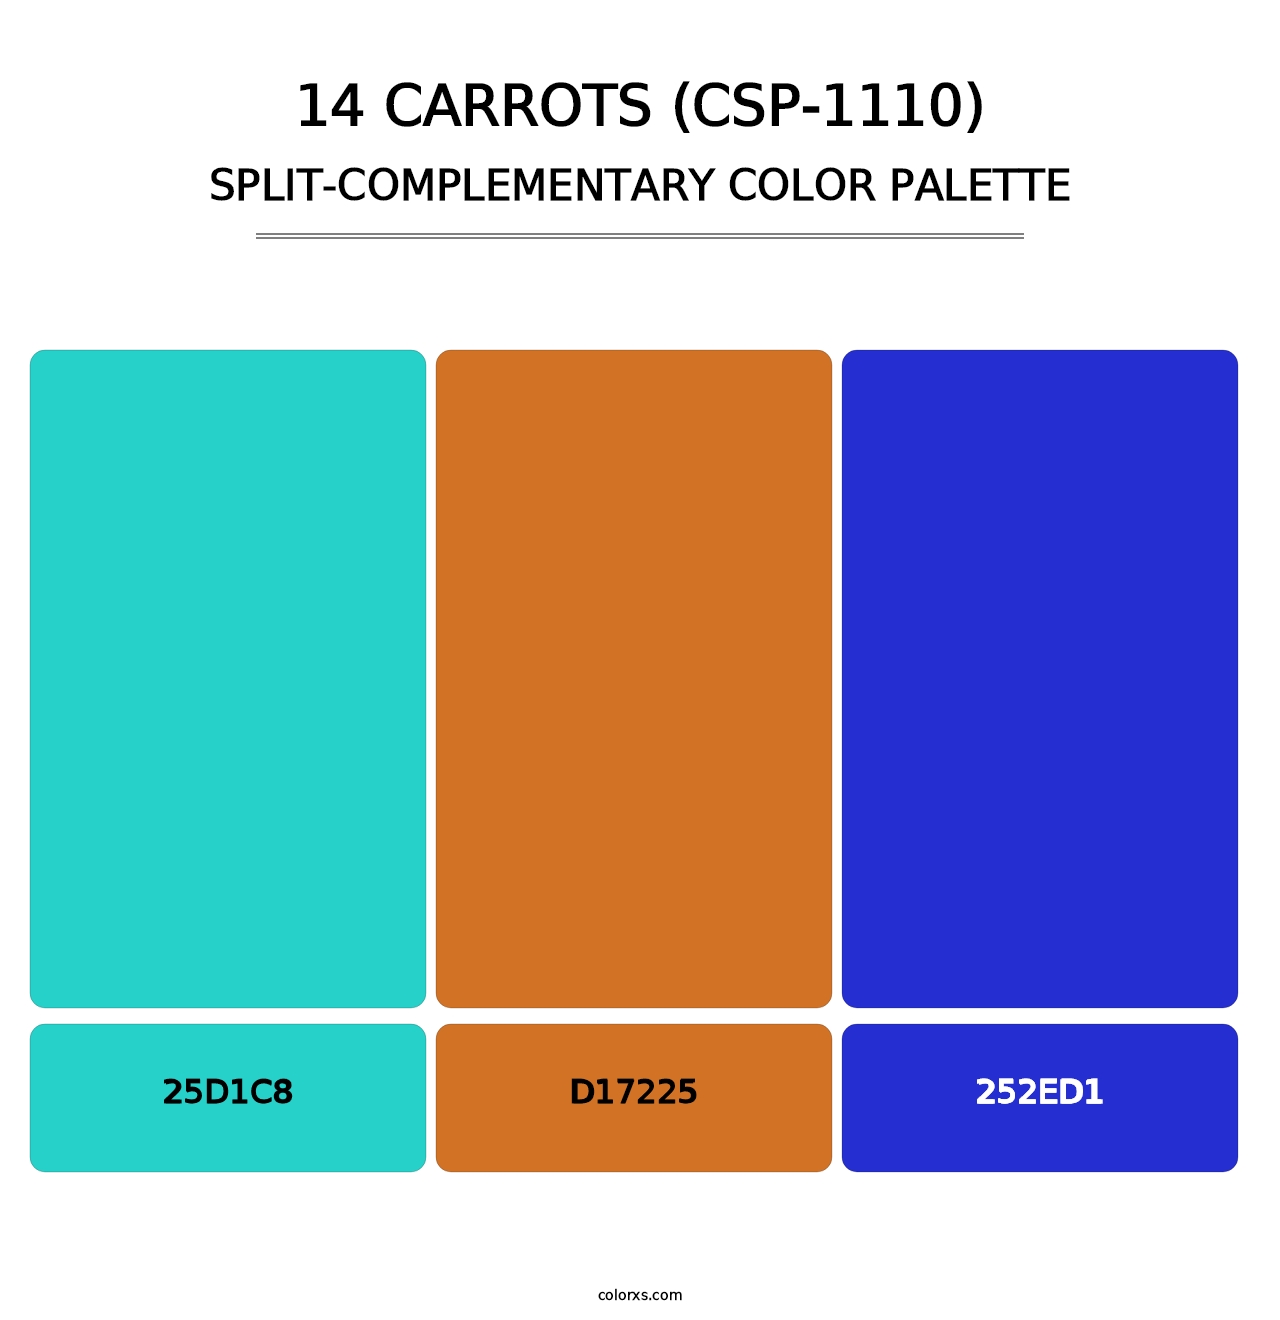 14 Carrots (CSP-1110) - Split-Complementary Color Palette